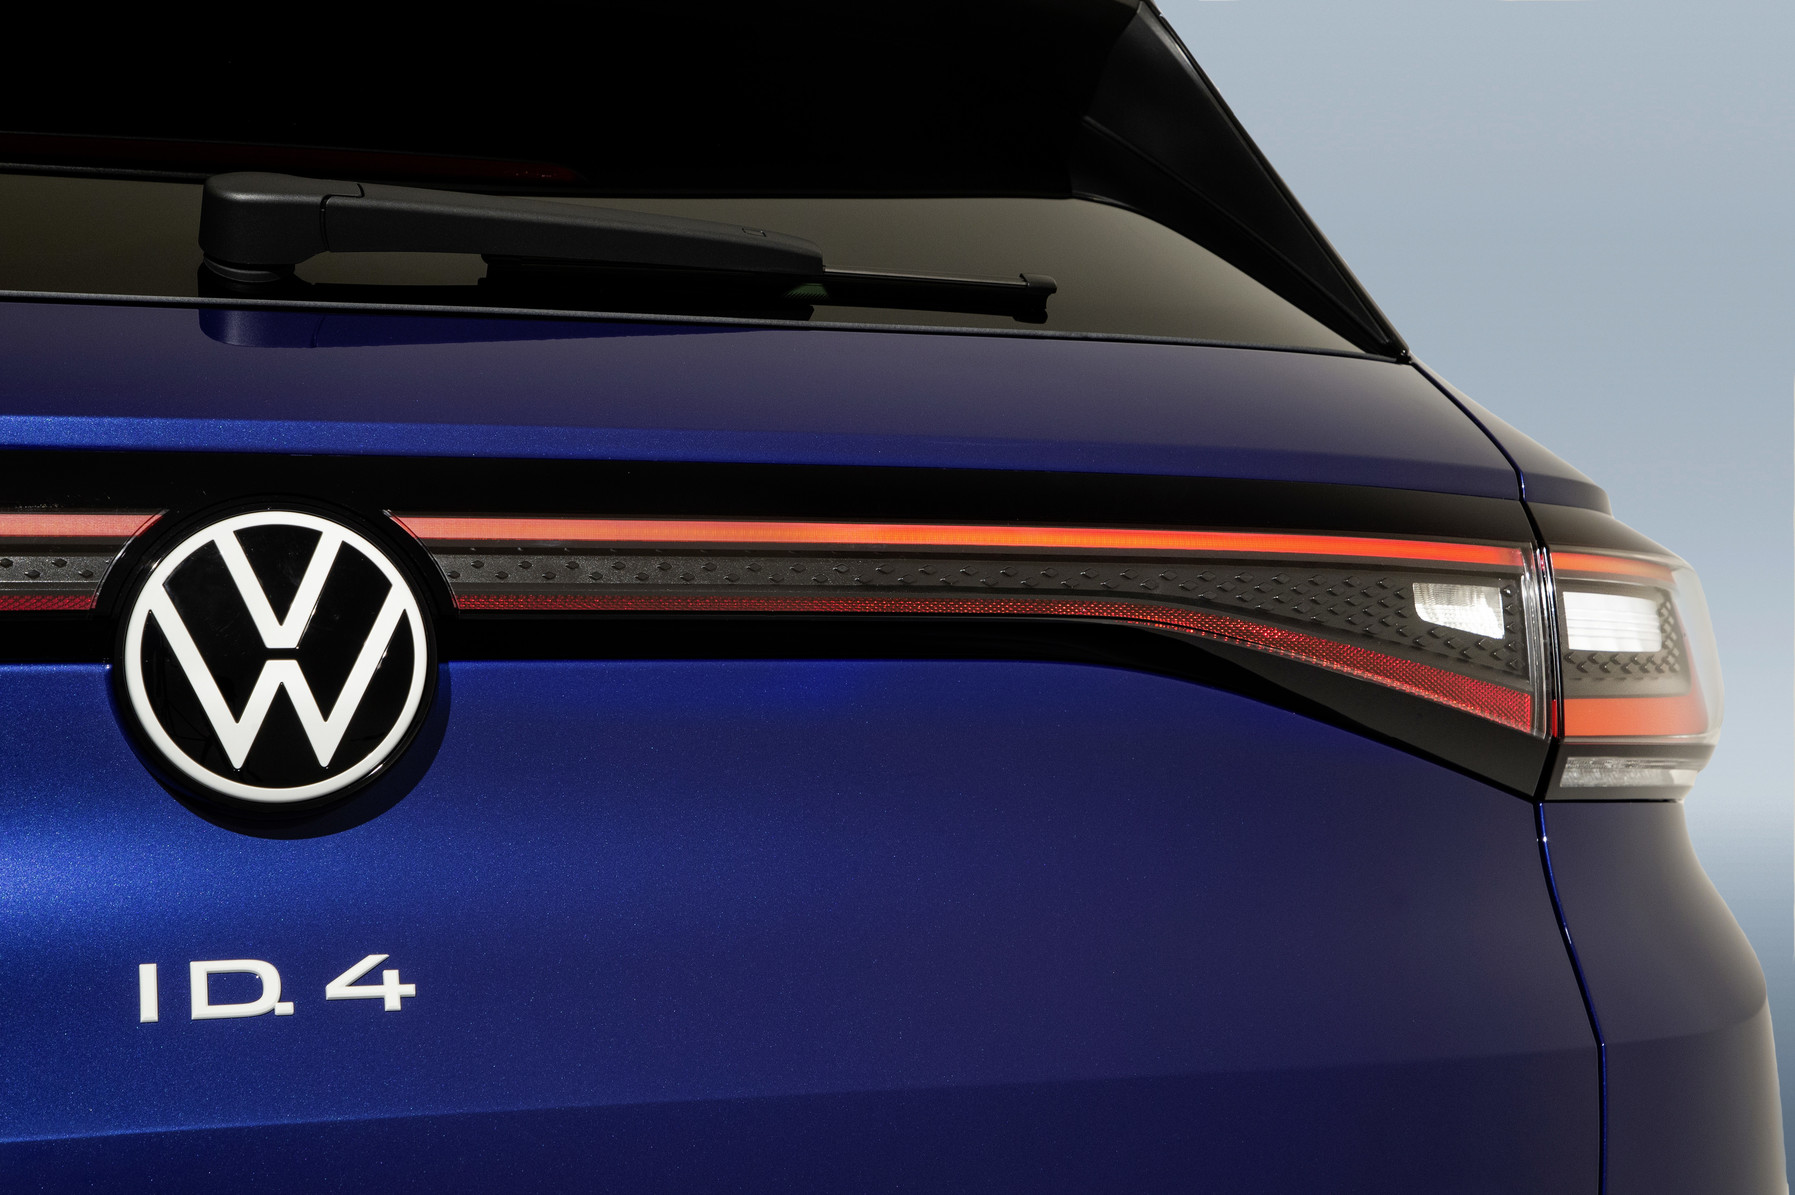 Volkswagen ID.4 offisiell: Her er bildene